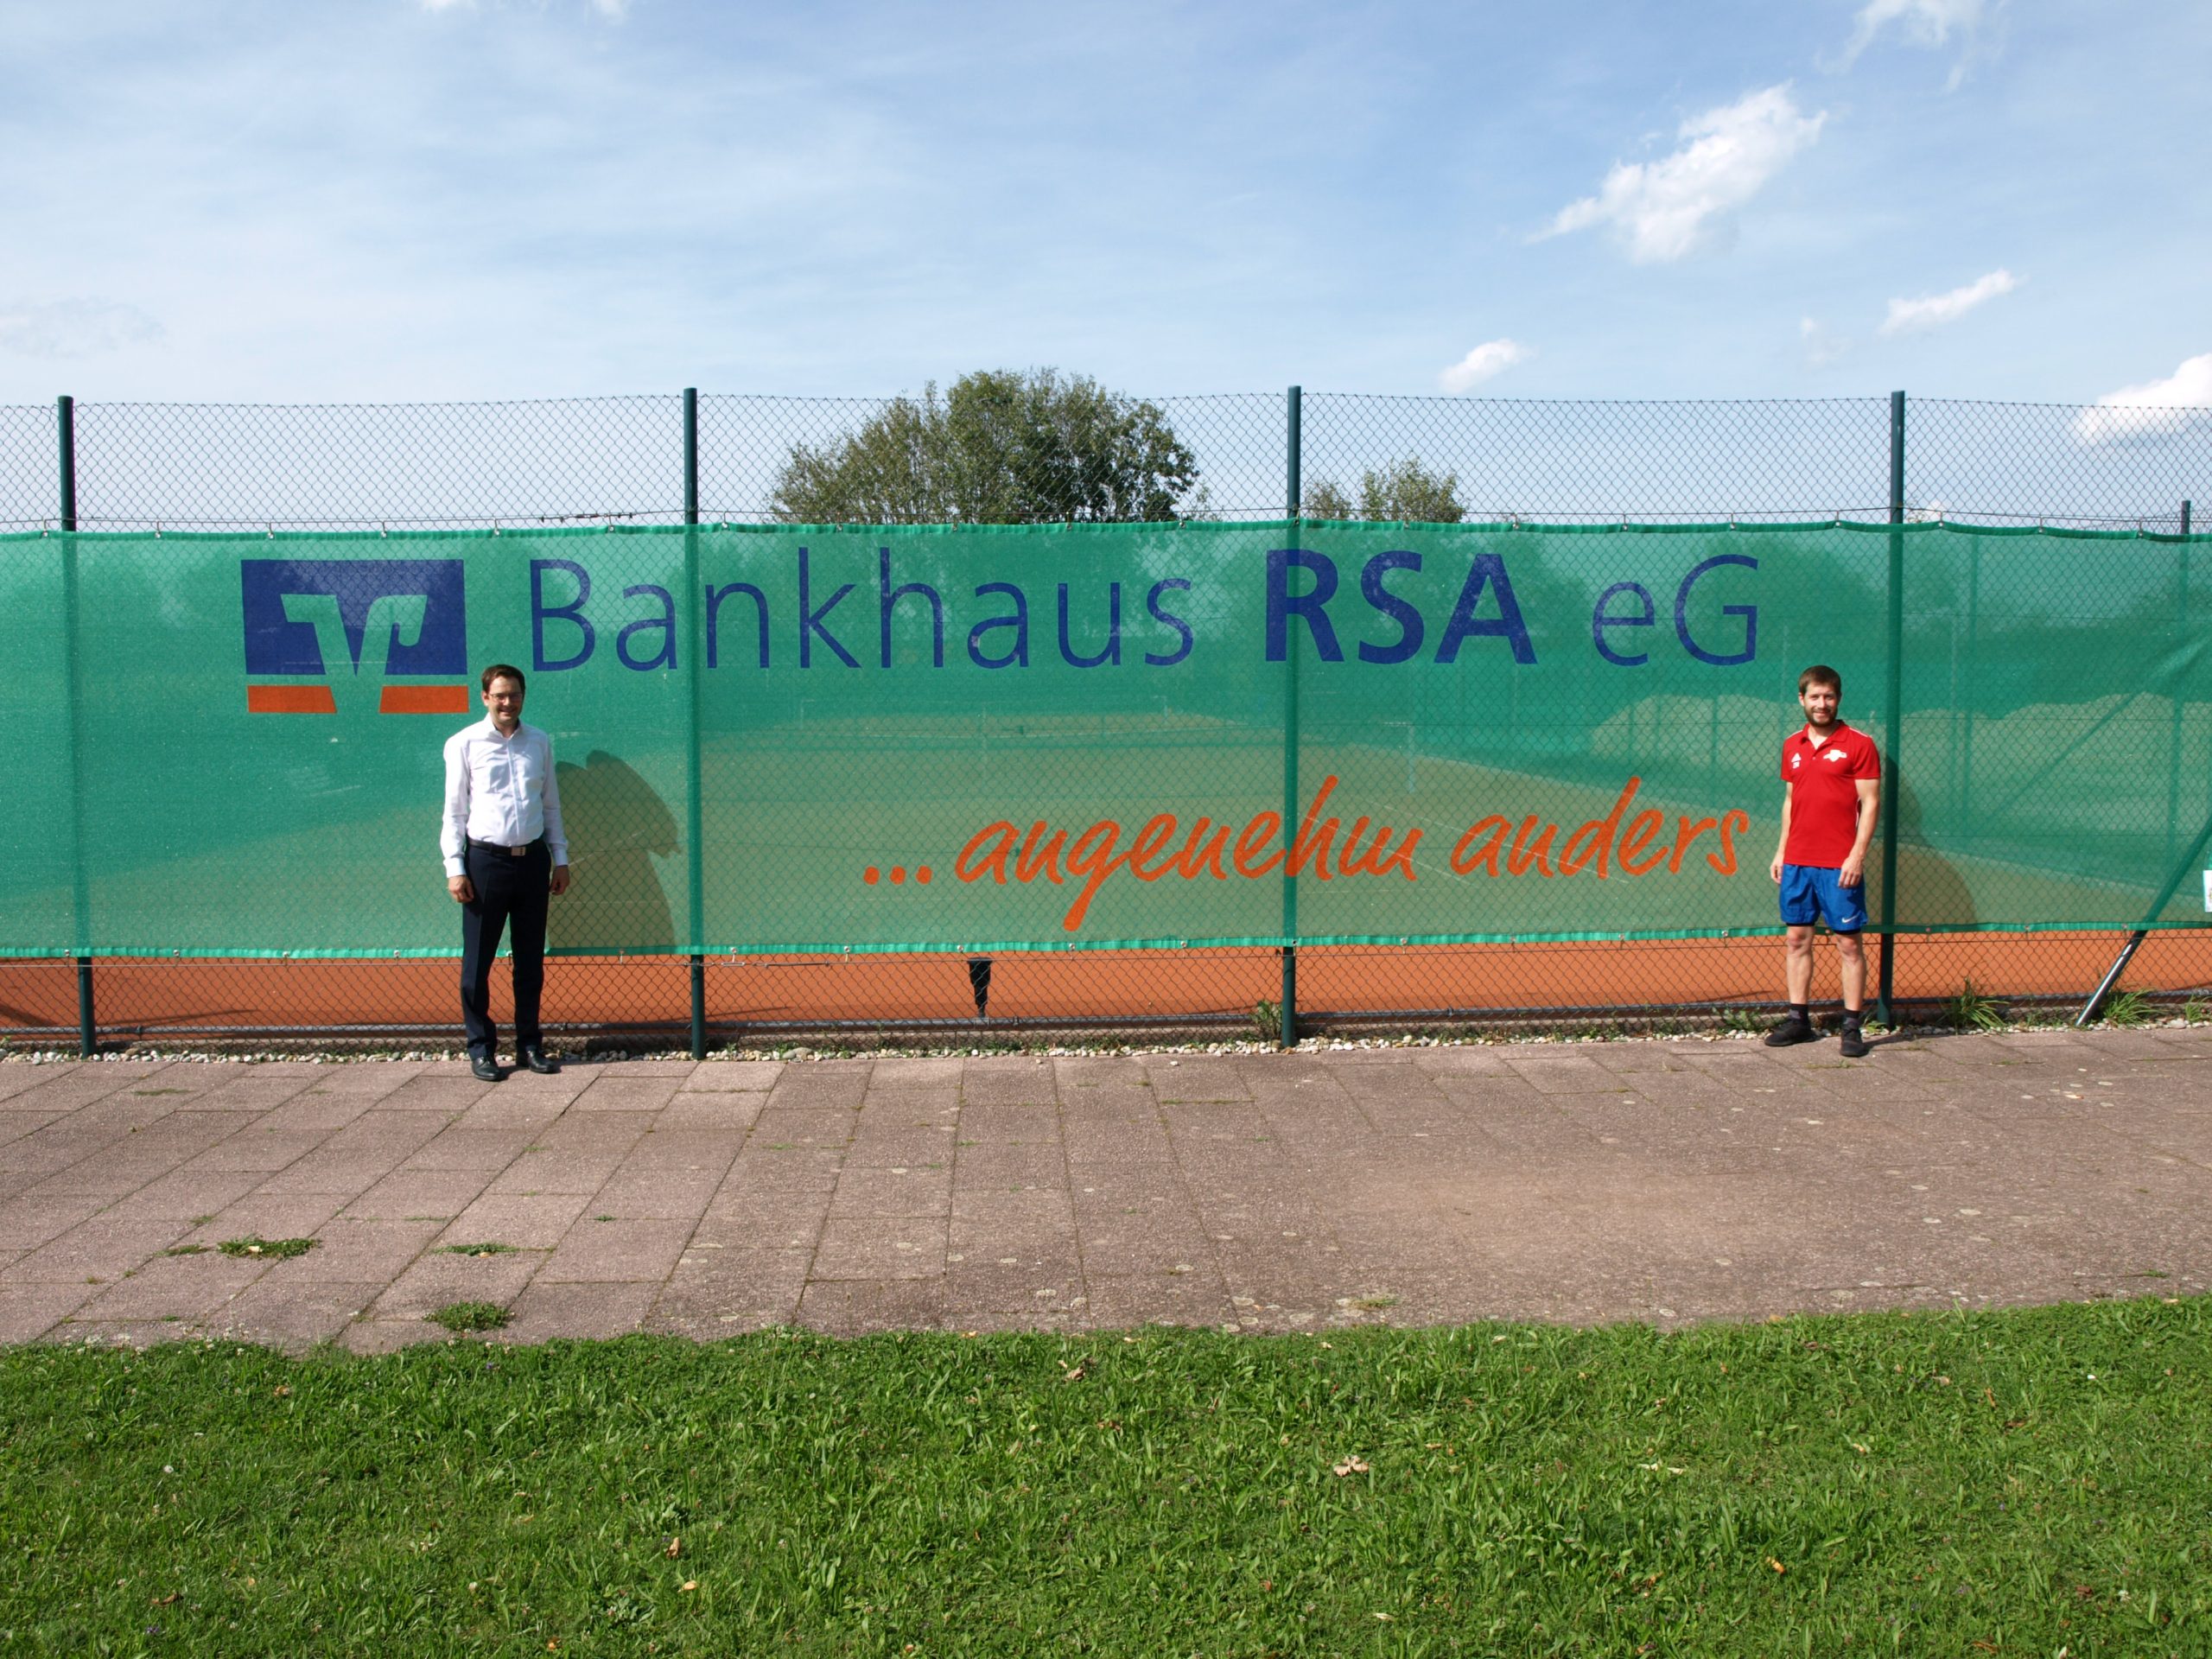 Read more about the article Dank der Tennisler an das Bankhaus RSA